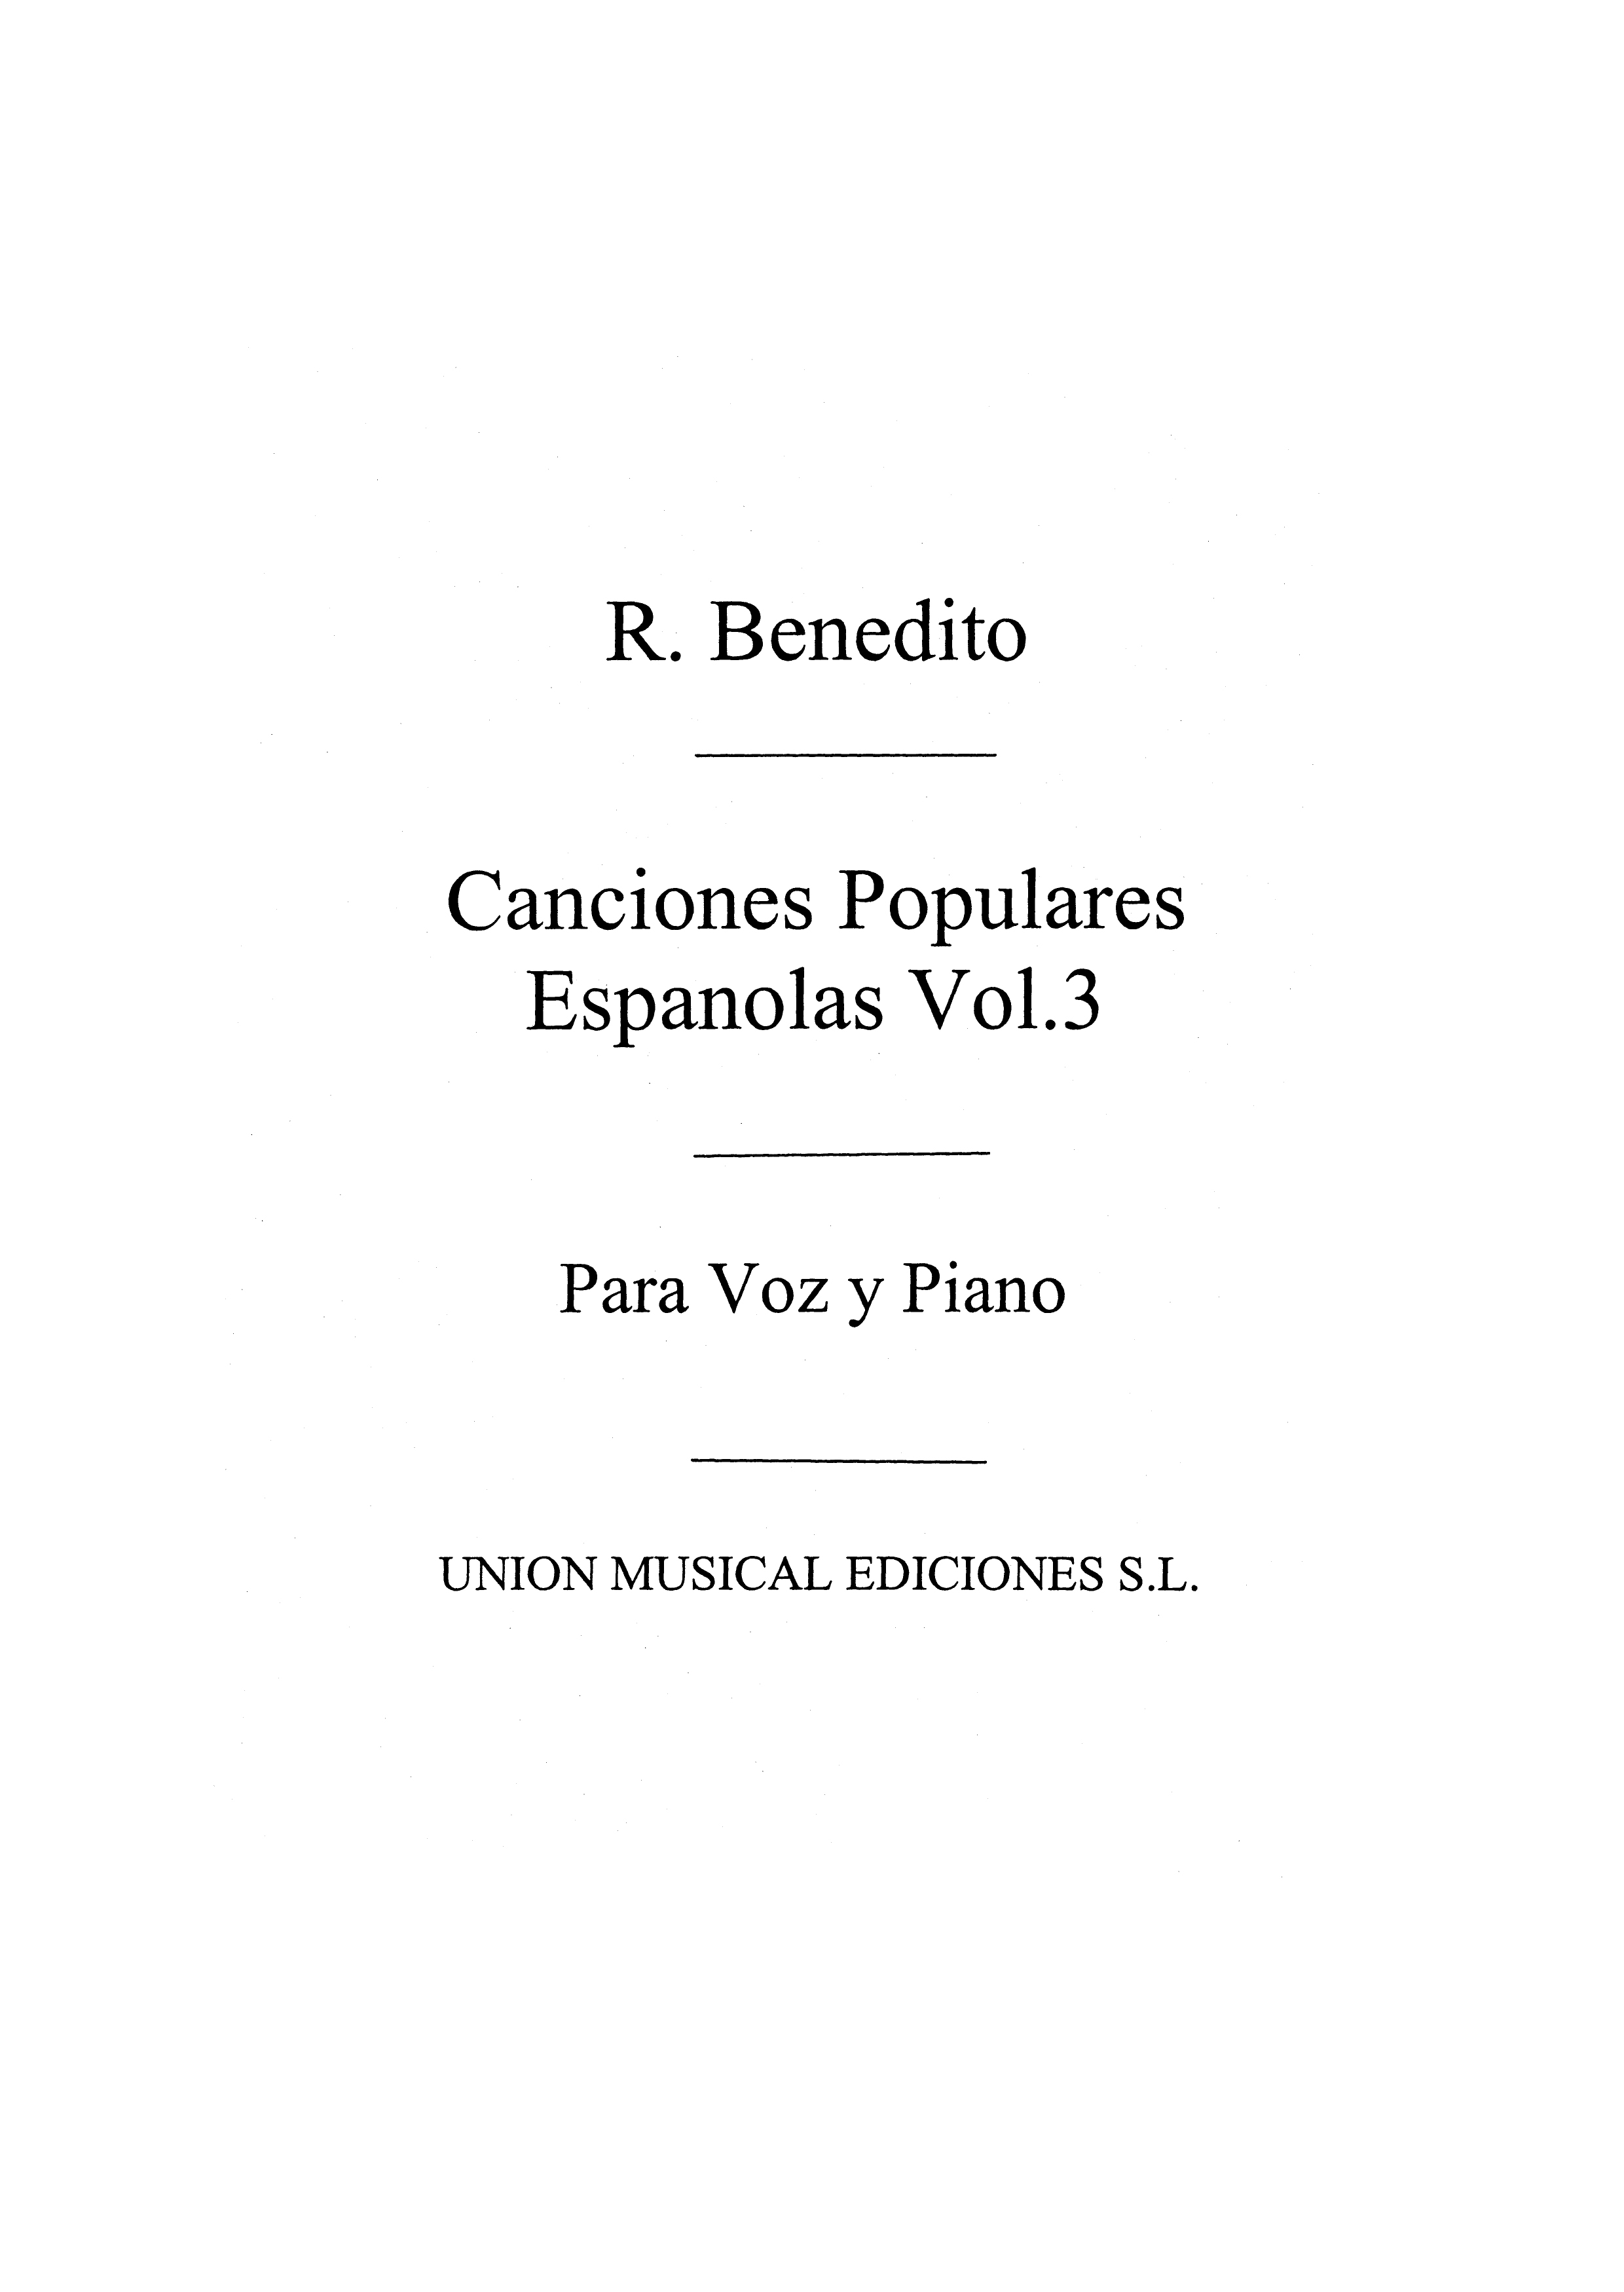 Benedito: Canciones Pop Espanolas Vol.3